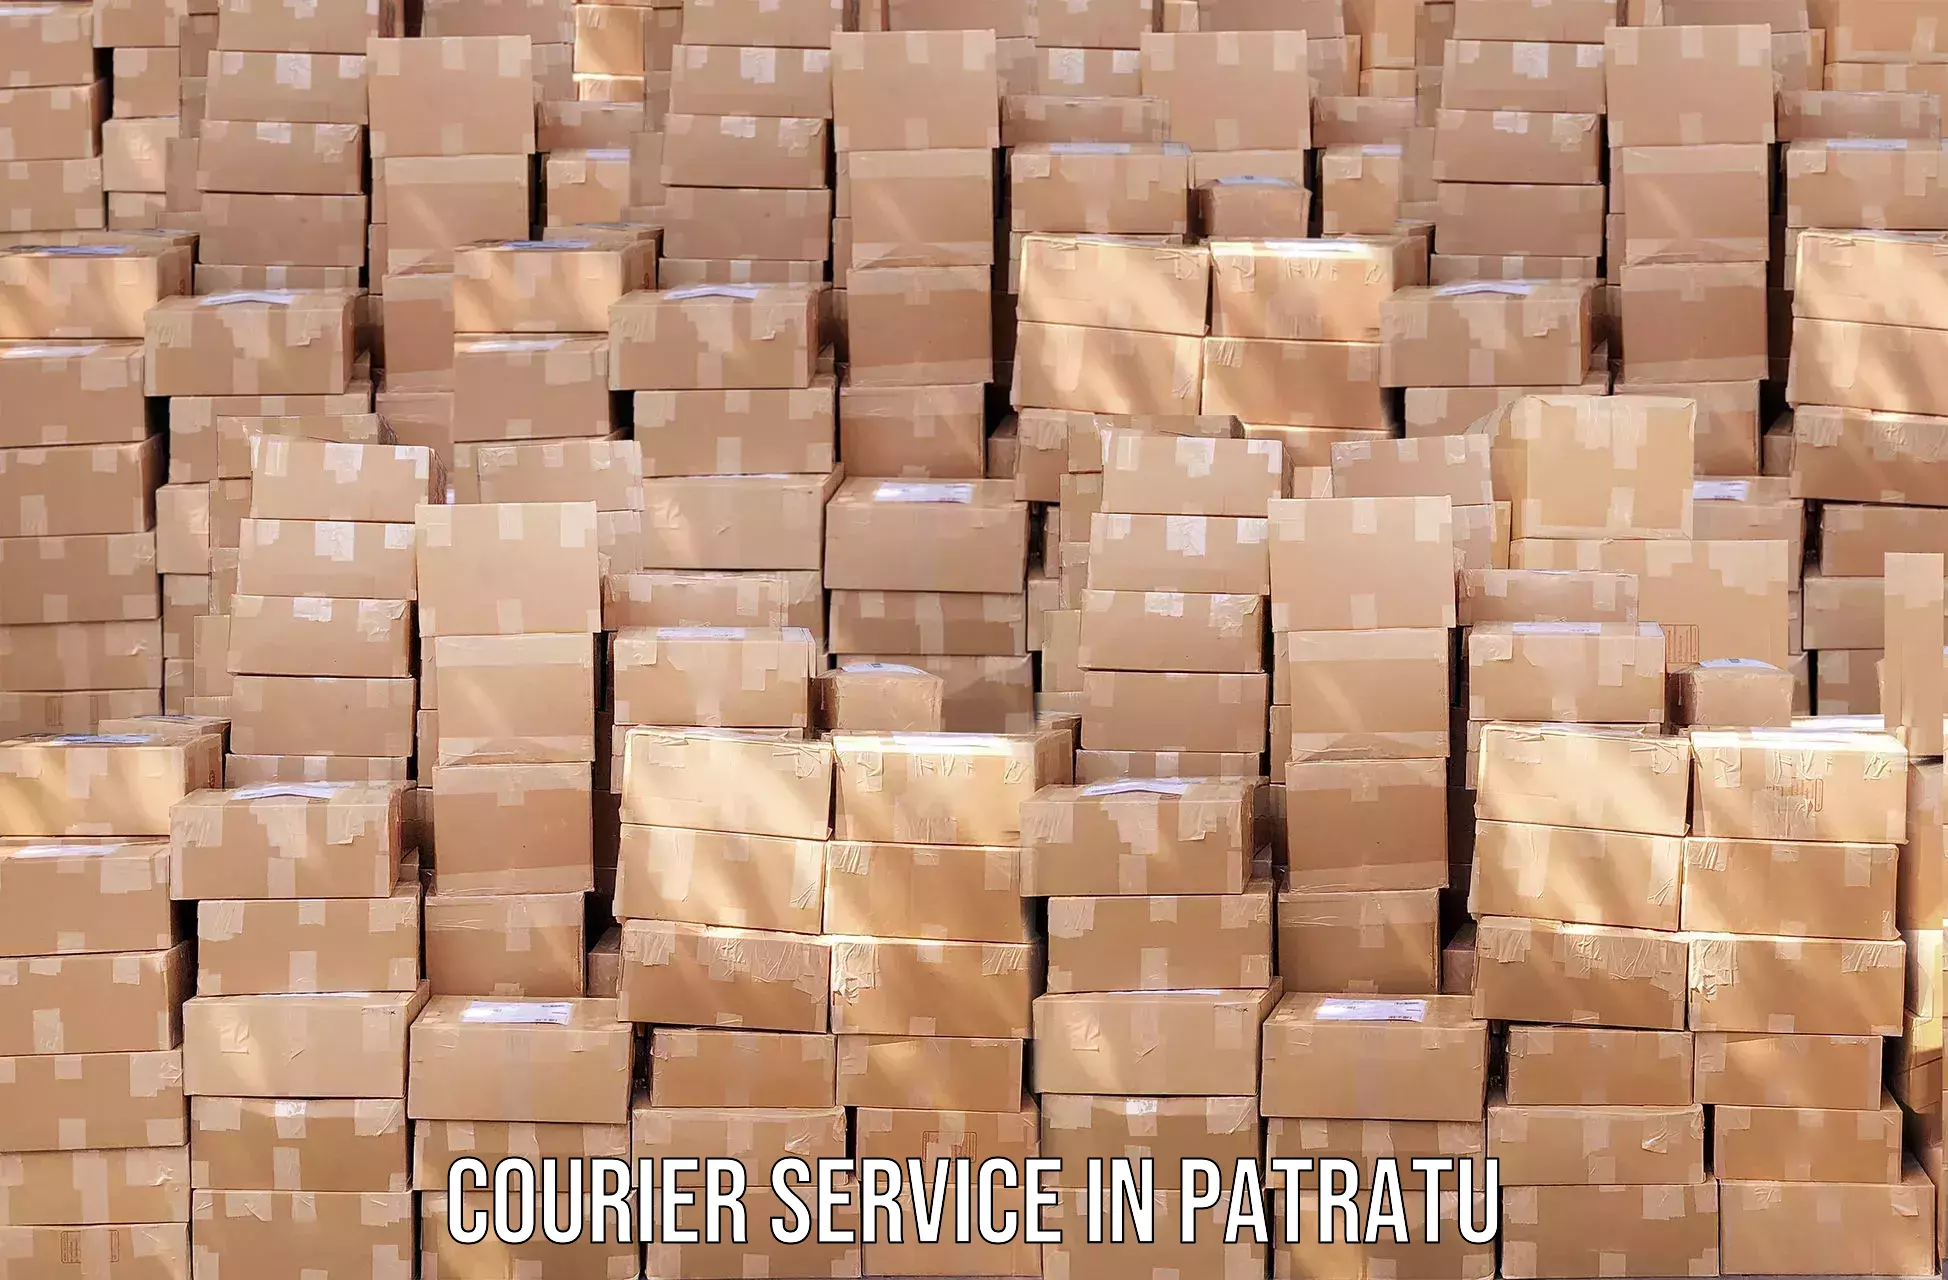 Individual parcel service in Patratu